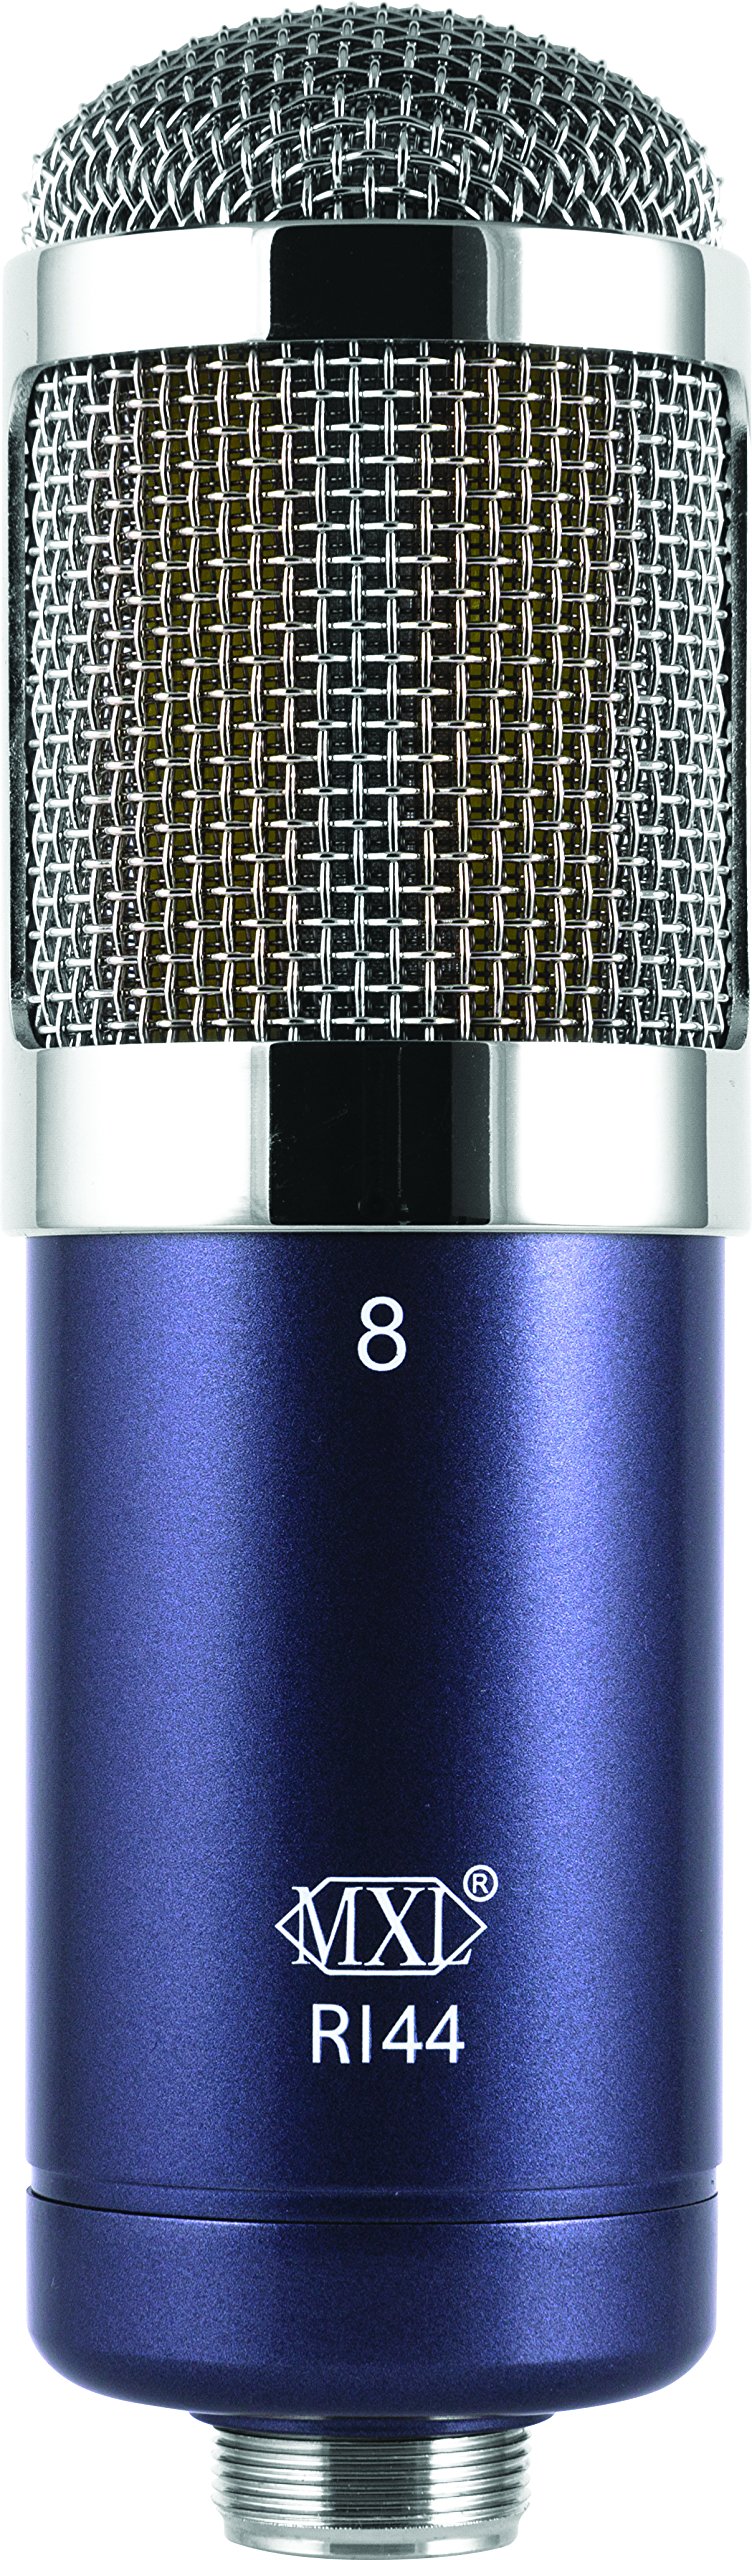 MXL R144 - Bändchenmikrofon - Ribbon microphone